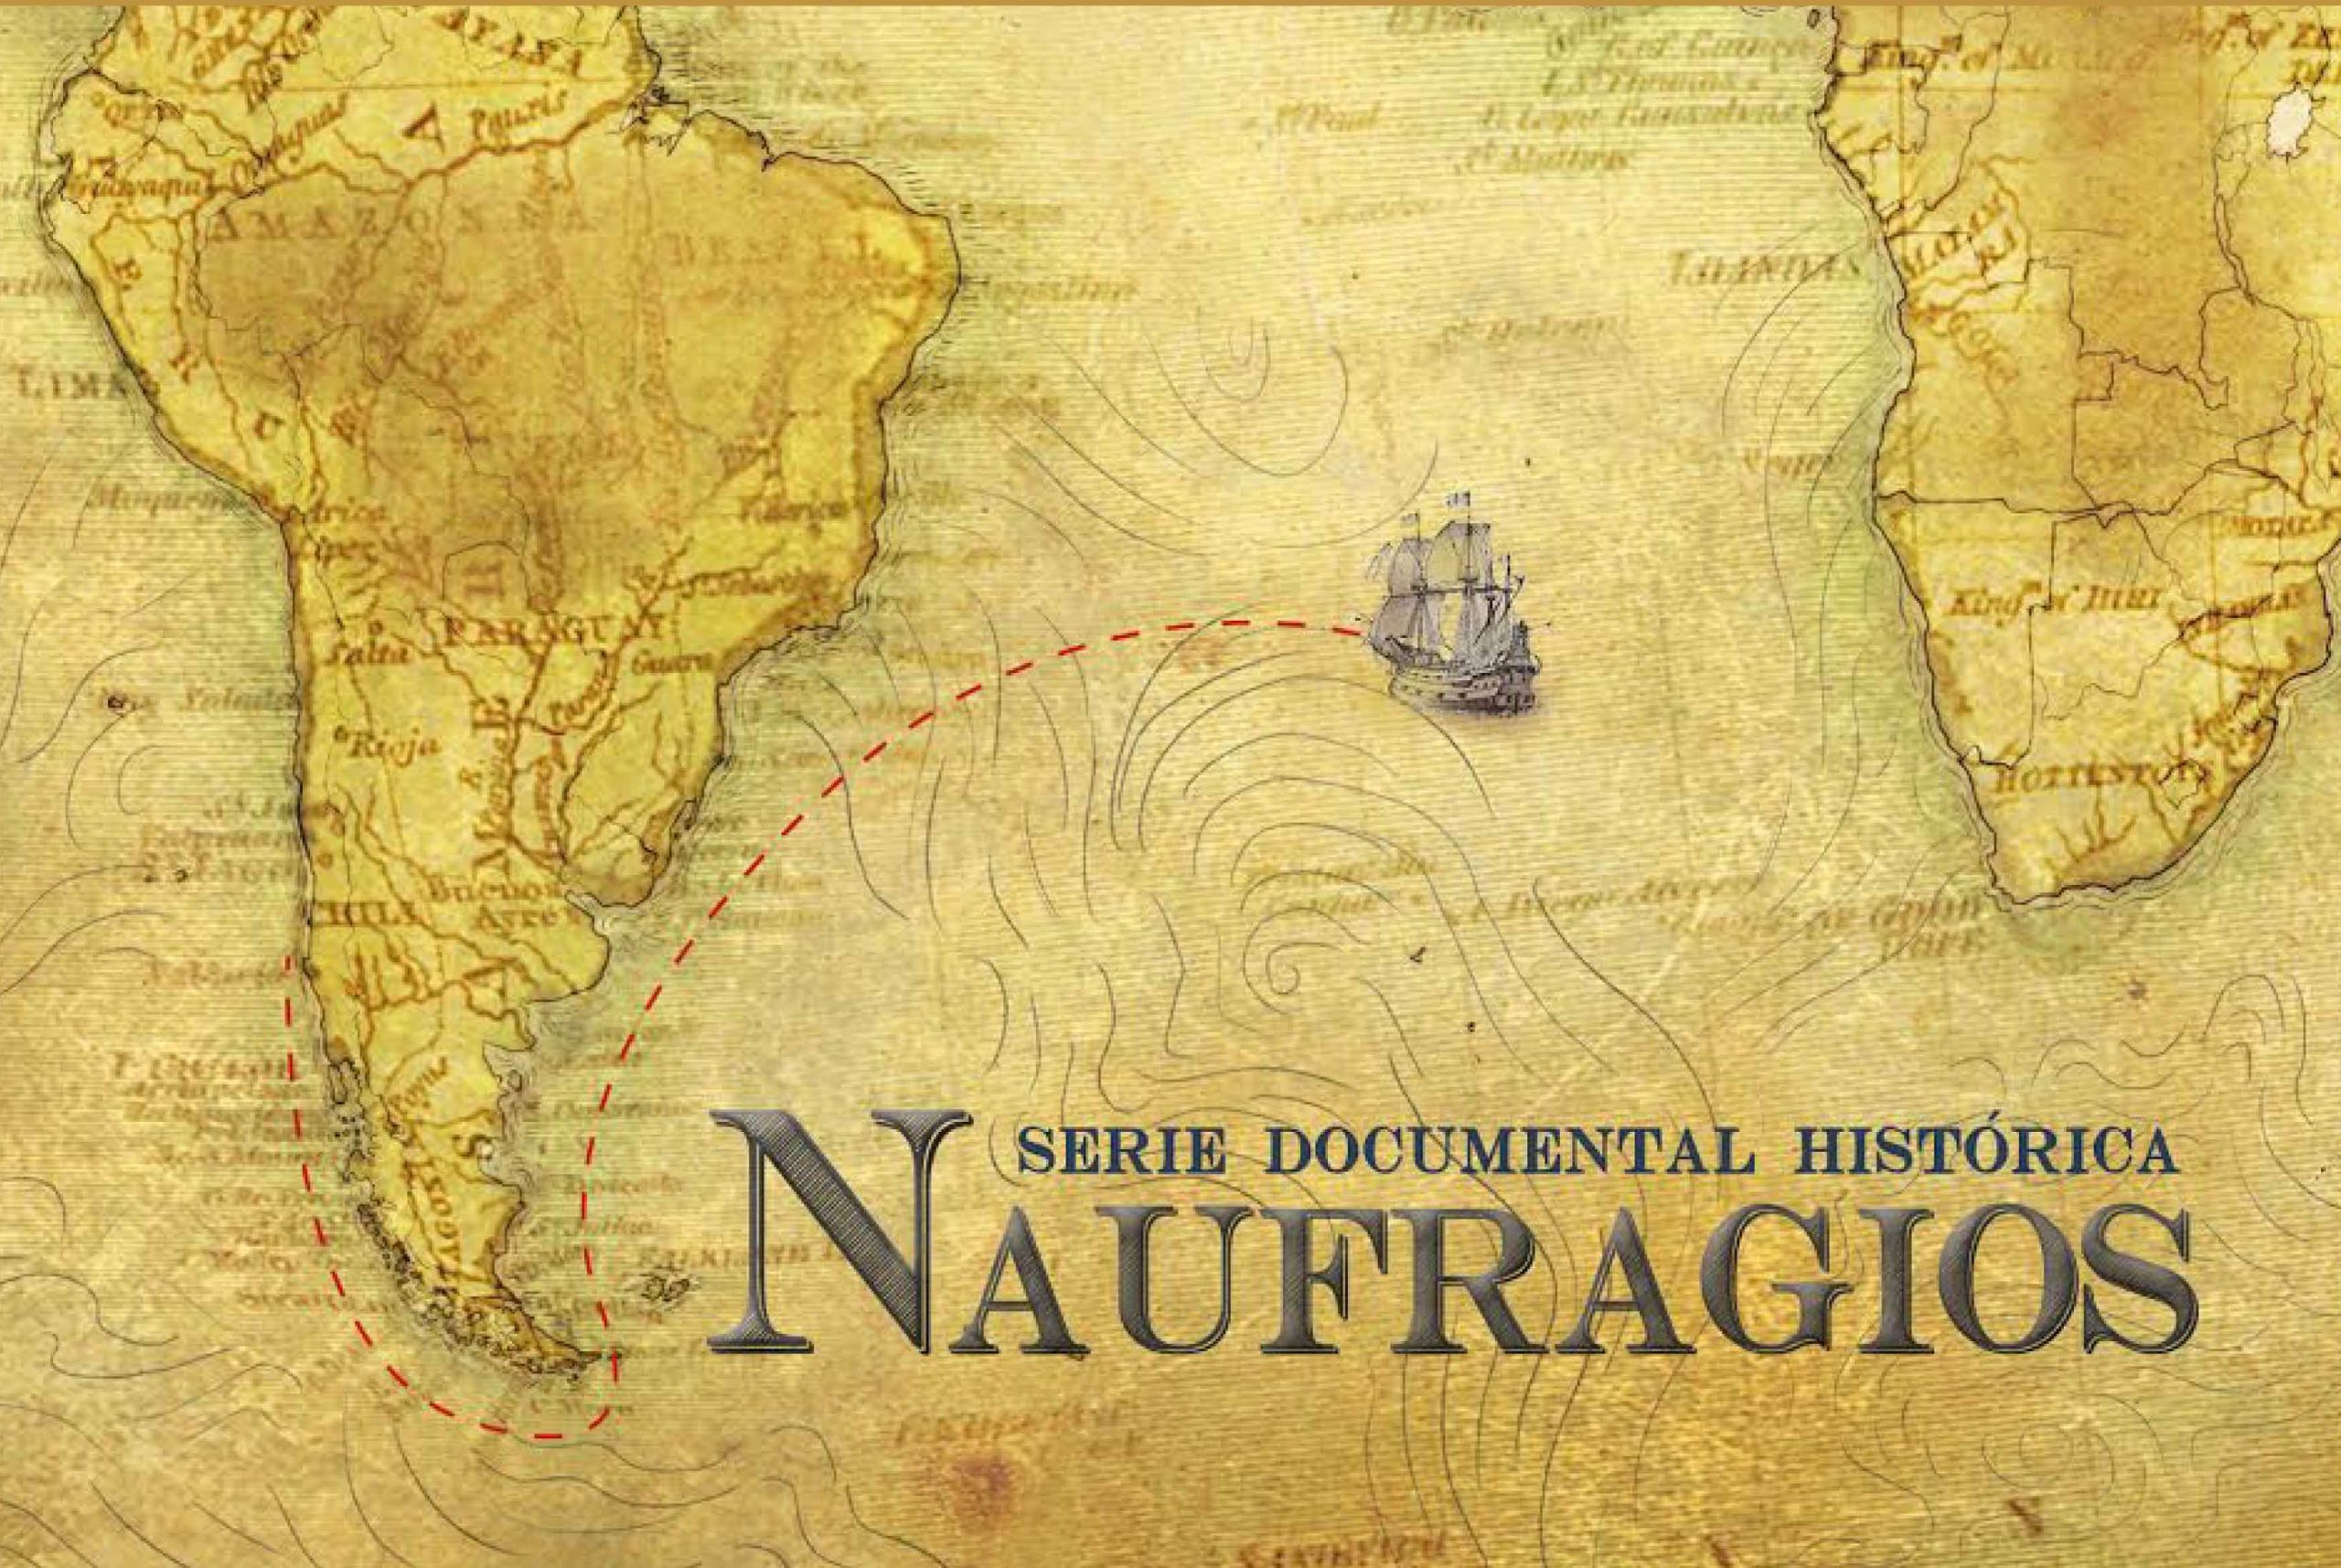 Municipio de Viña del Mar invita a ciclo de documentales históricos de “Naufragios”, develando el patrimonio submarino